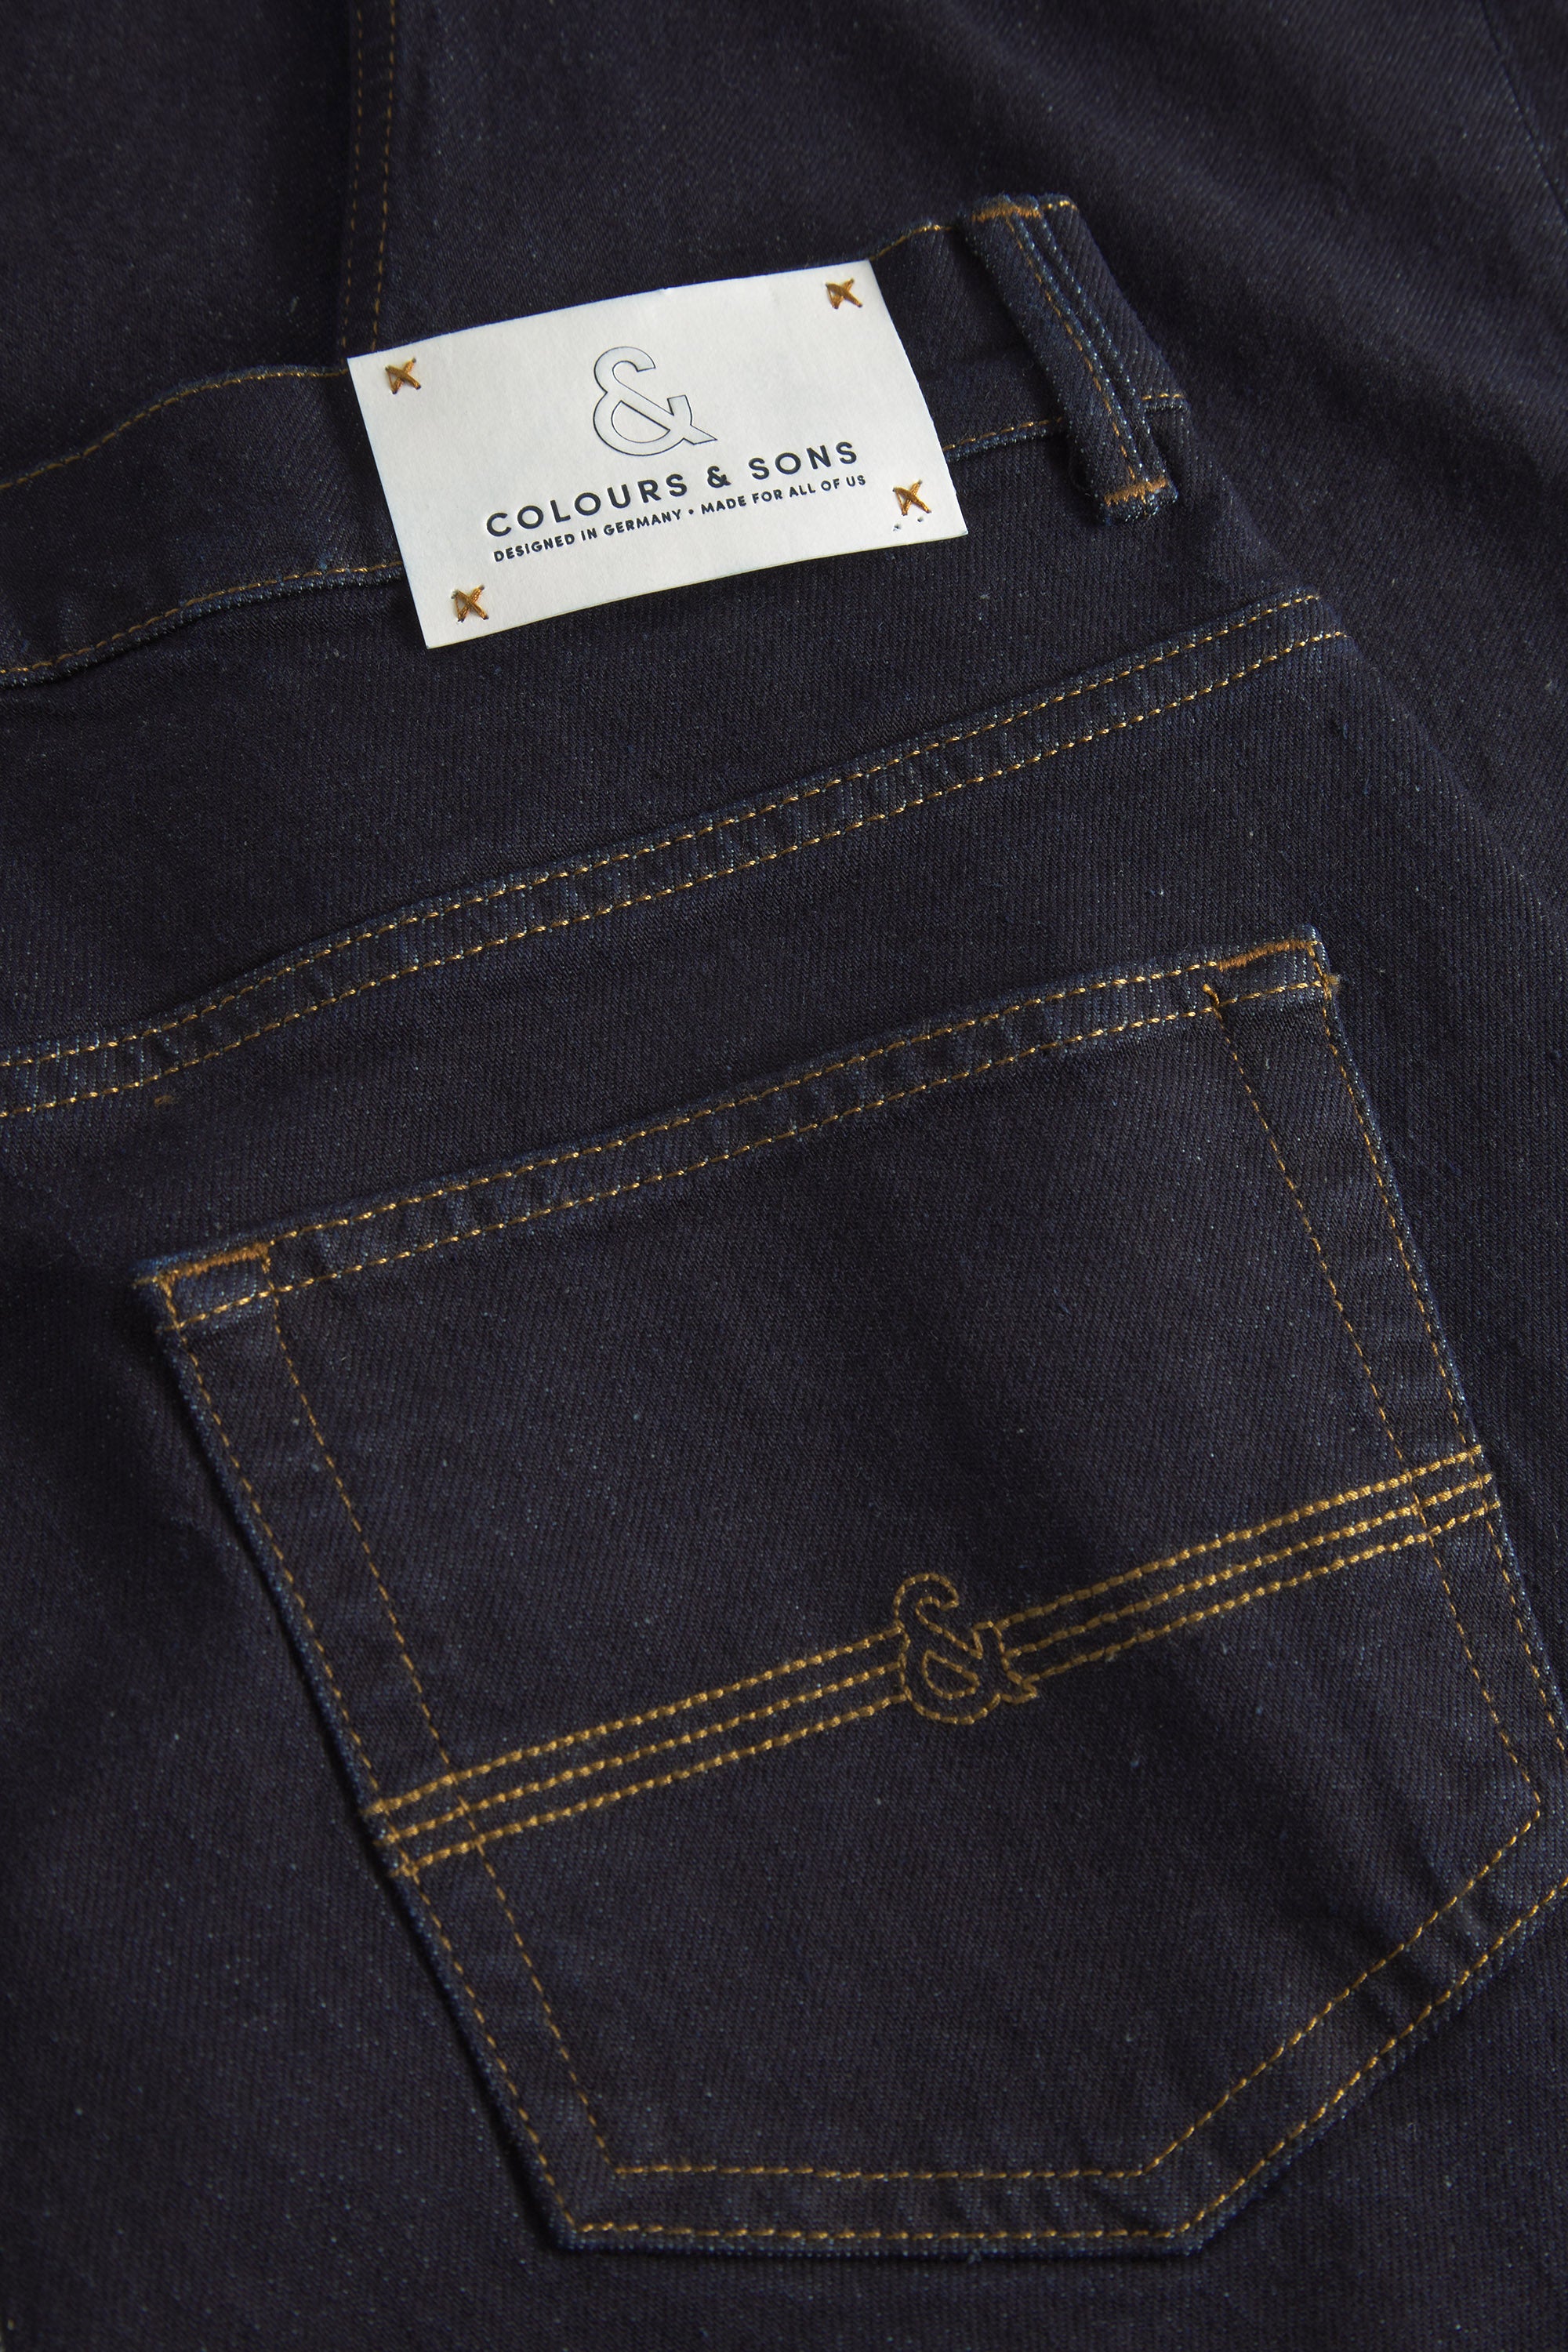 Herren Jeans, dunkelblau, 77% Baumwolle 22% recycled Baumwolle 1% Elastan von Colours & Sons